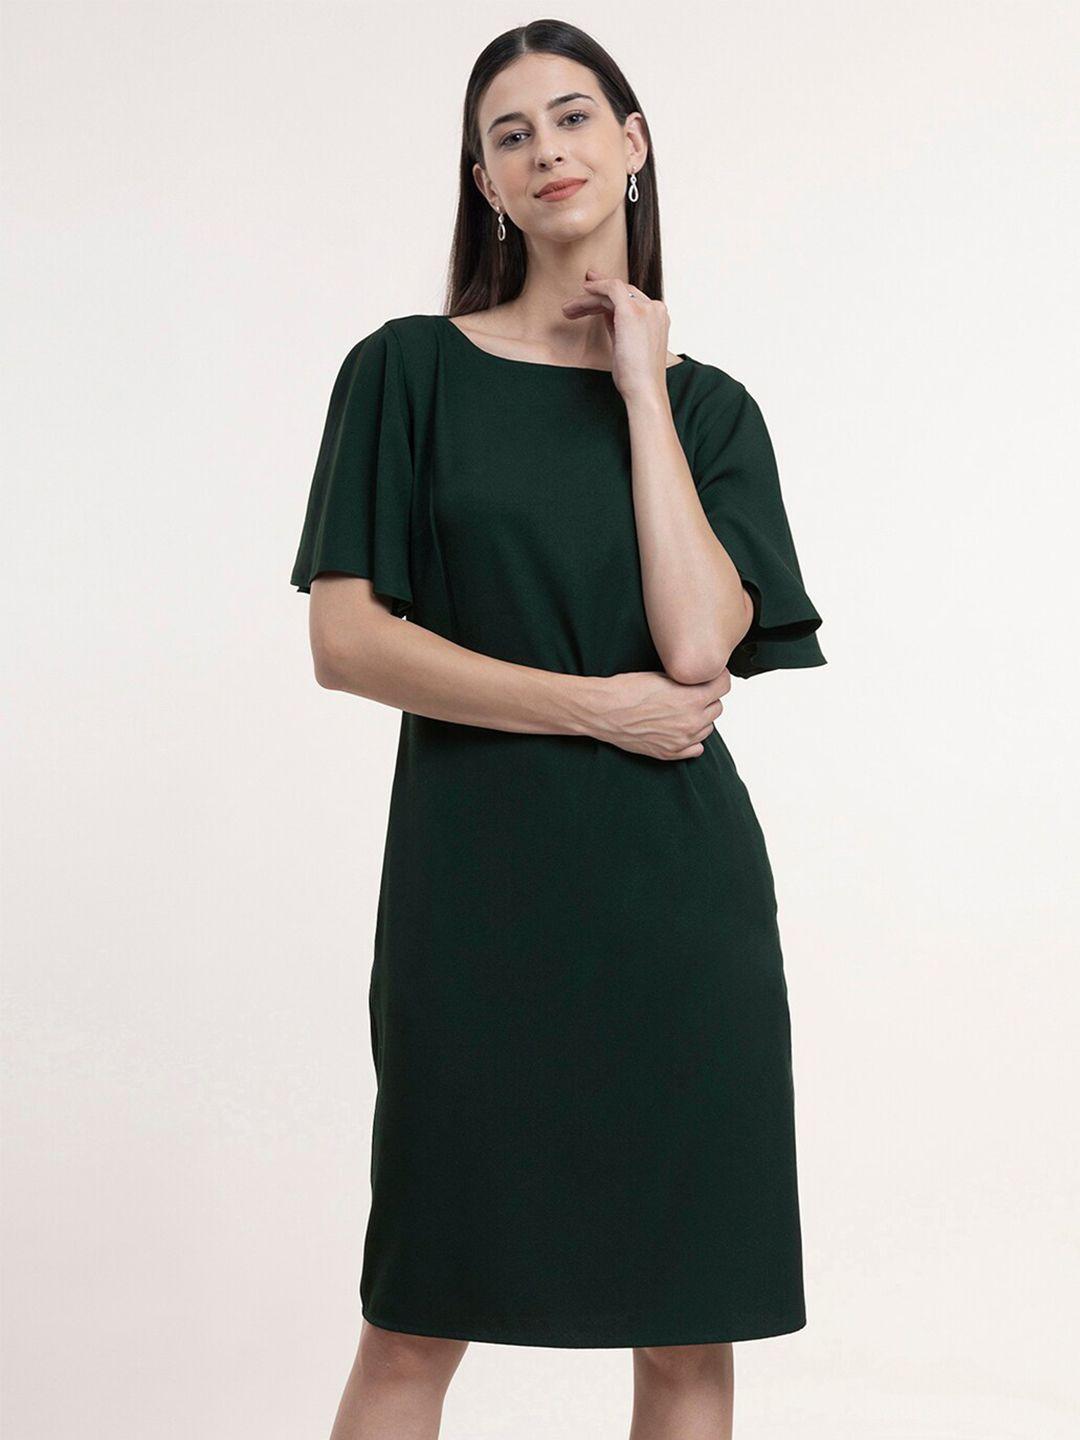 fablestreet green formal sheath dress